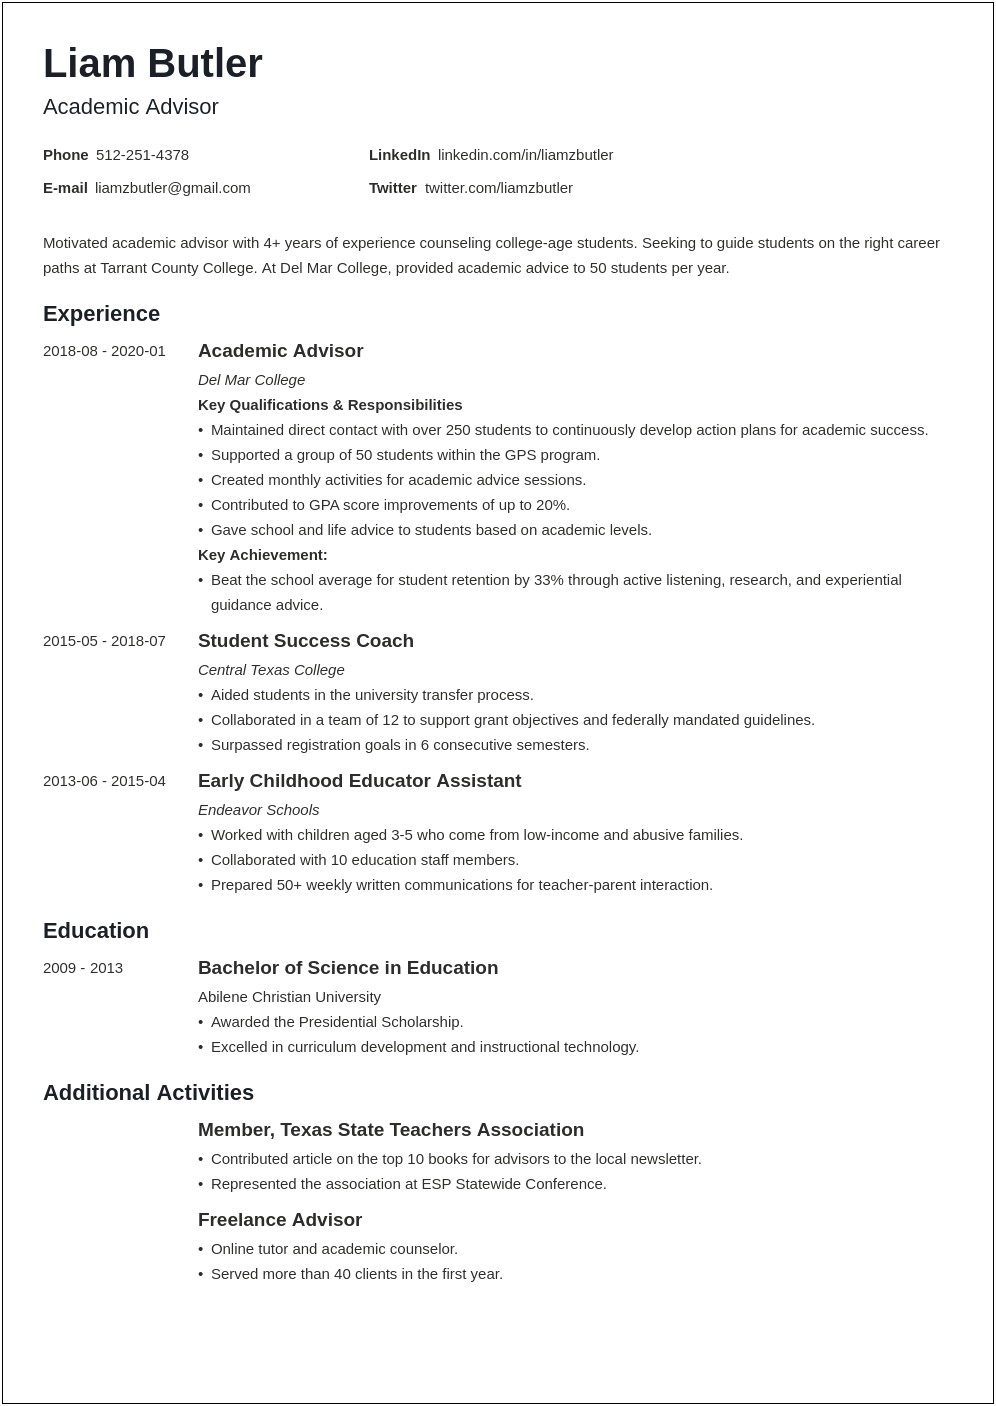 Resume Objectives For Student Advisor Position